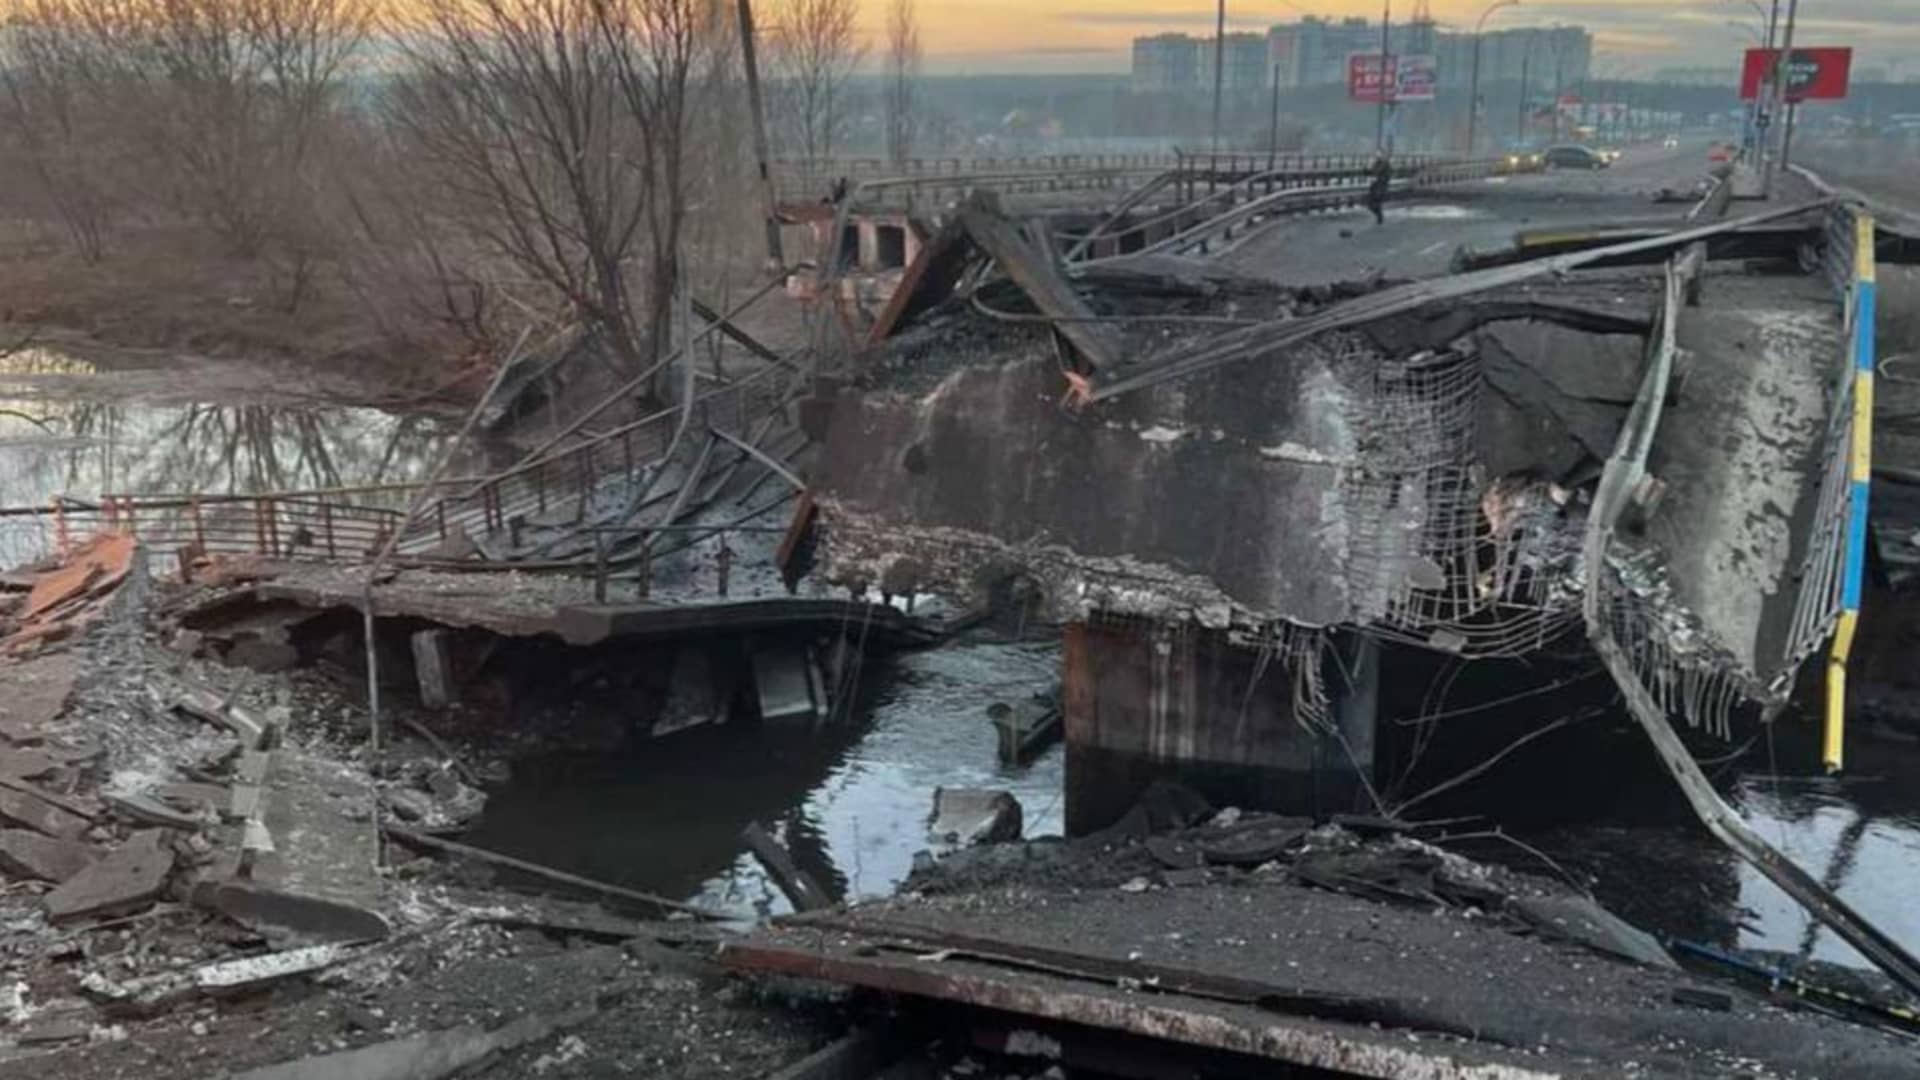 A destroyed bridge in Ukraine.